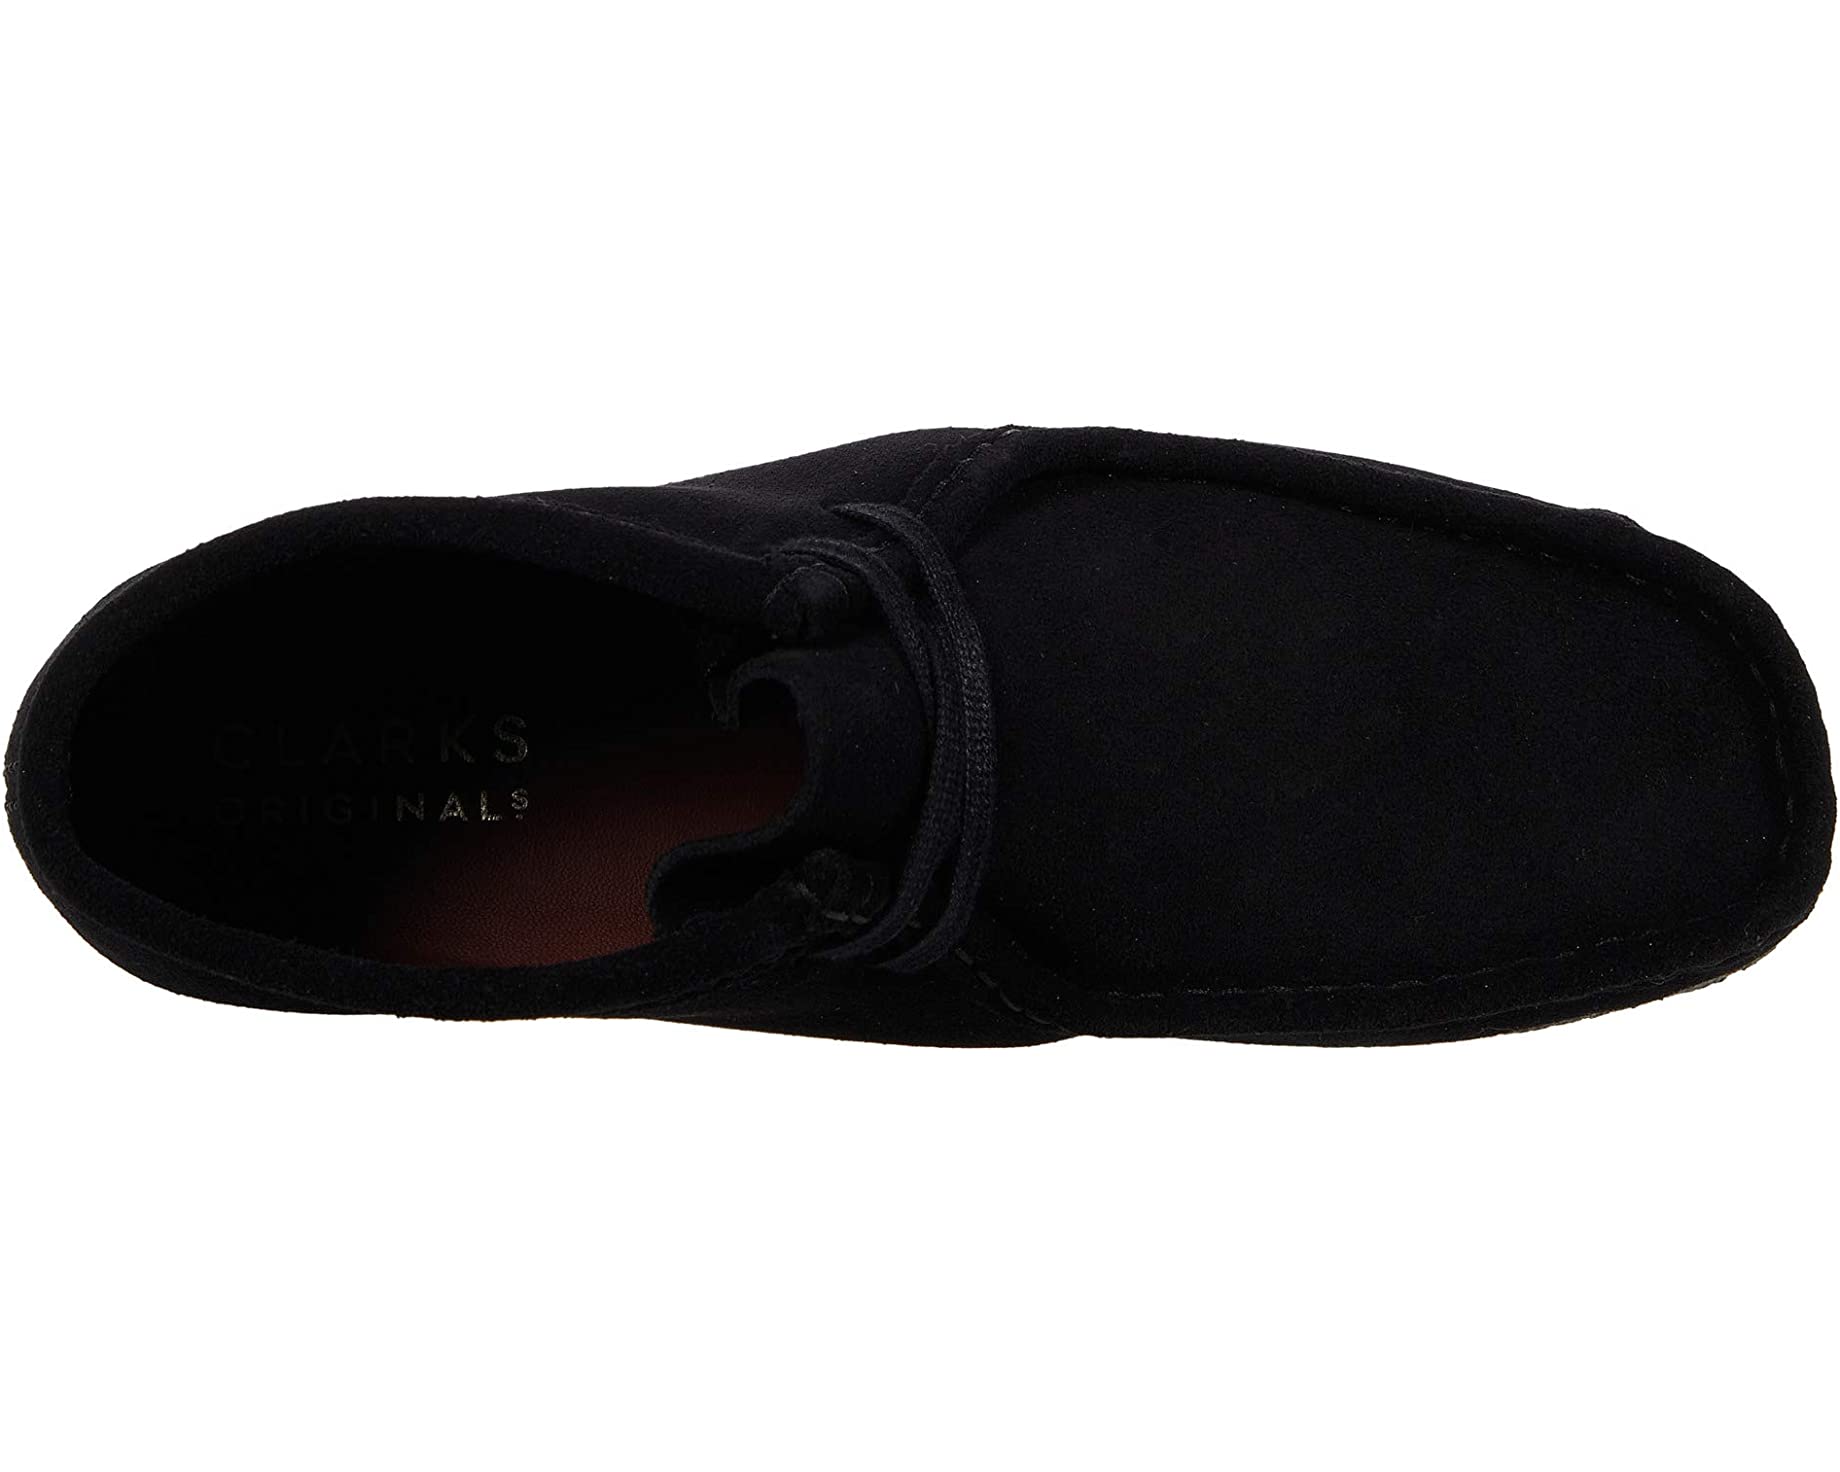 Ботинки Wallabee Boot Clarks, черный ботинки clarks originals wallabee цвет grey